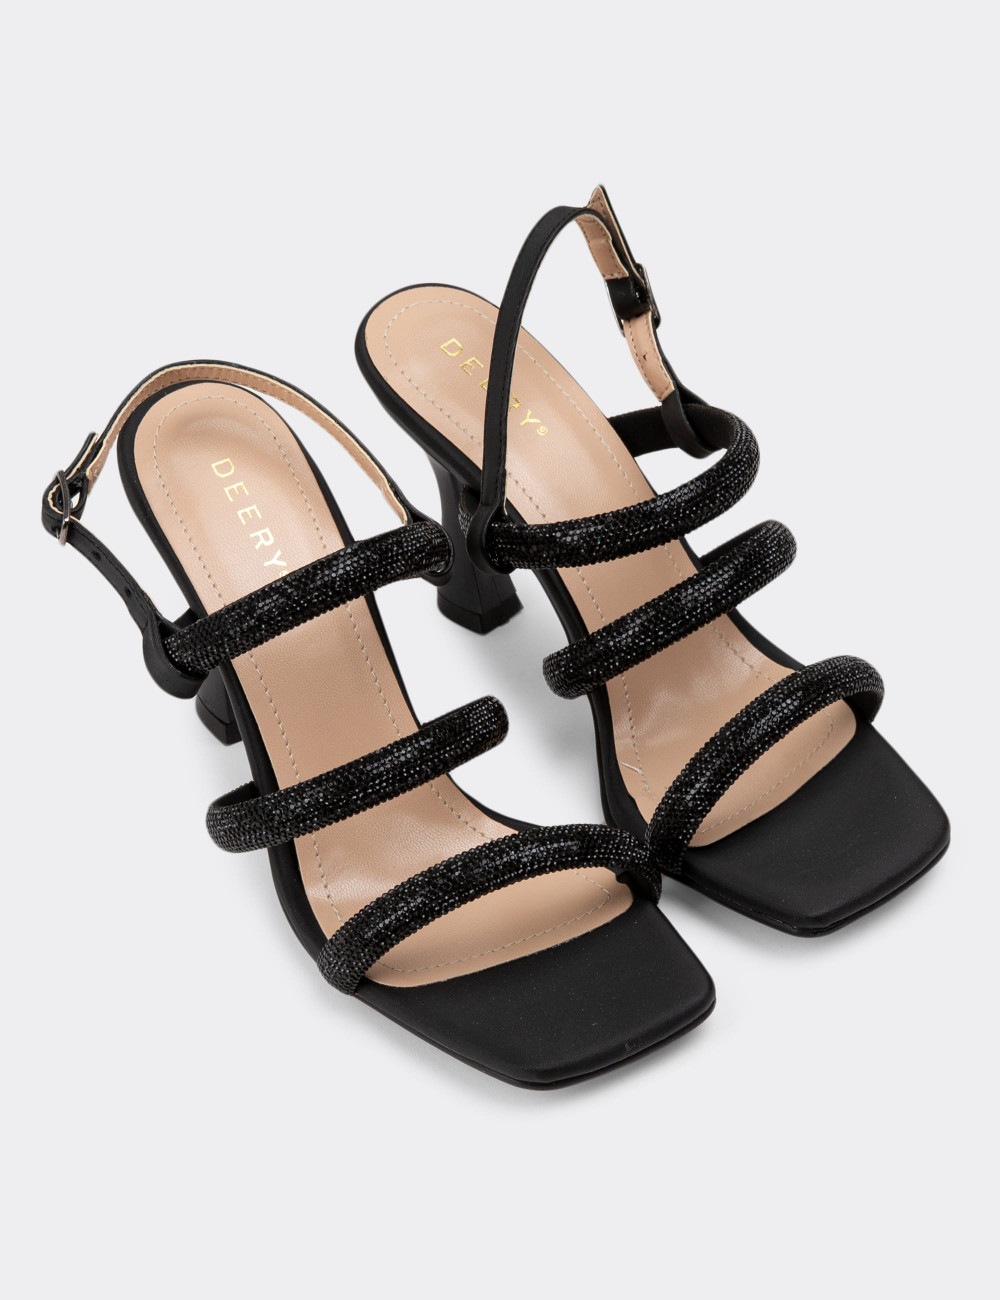 Siyah Topuklu Taşlı Abiye Kadın Ayakkabı - N1918ZSYHM01